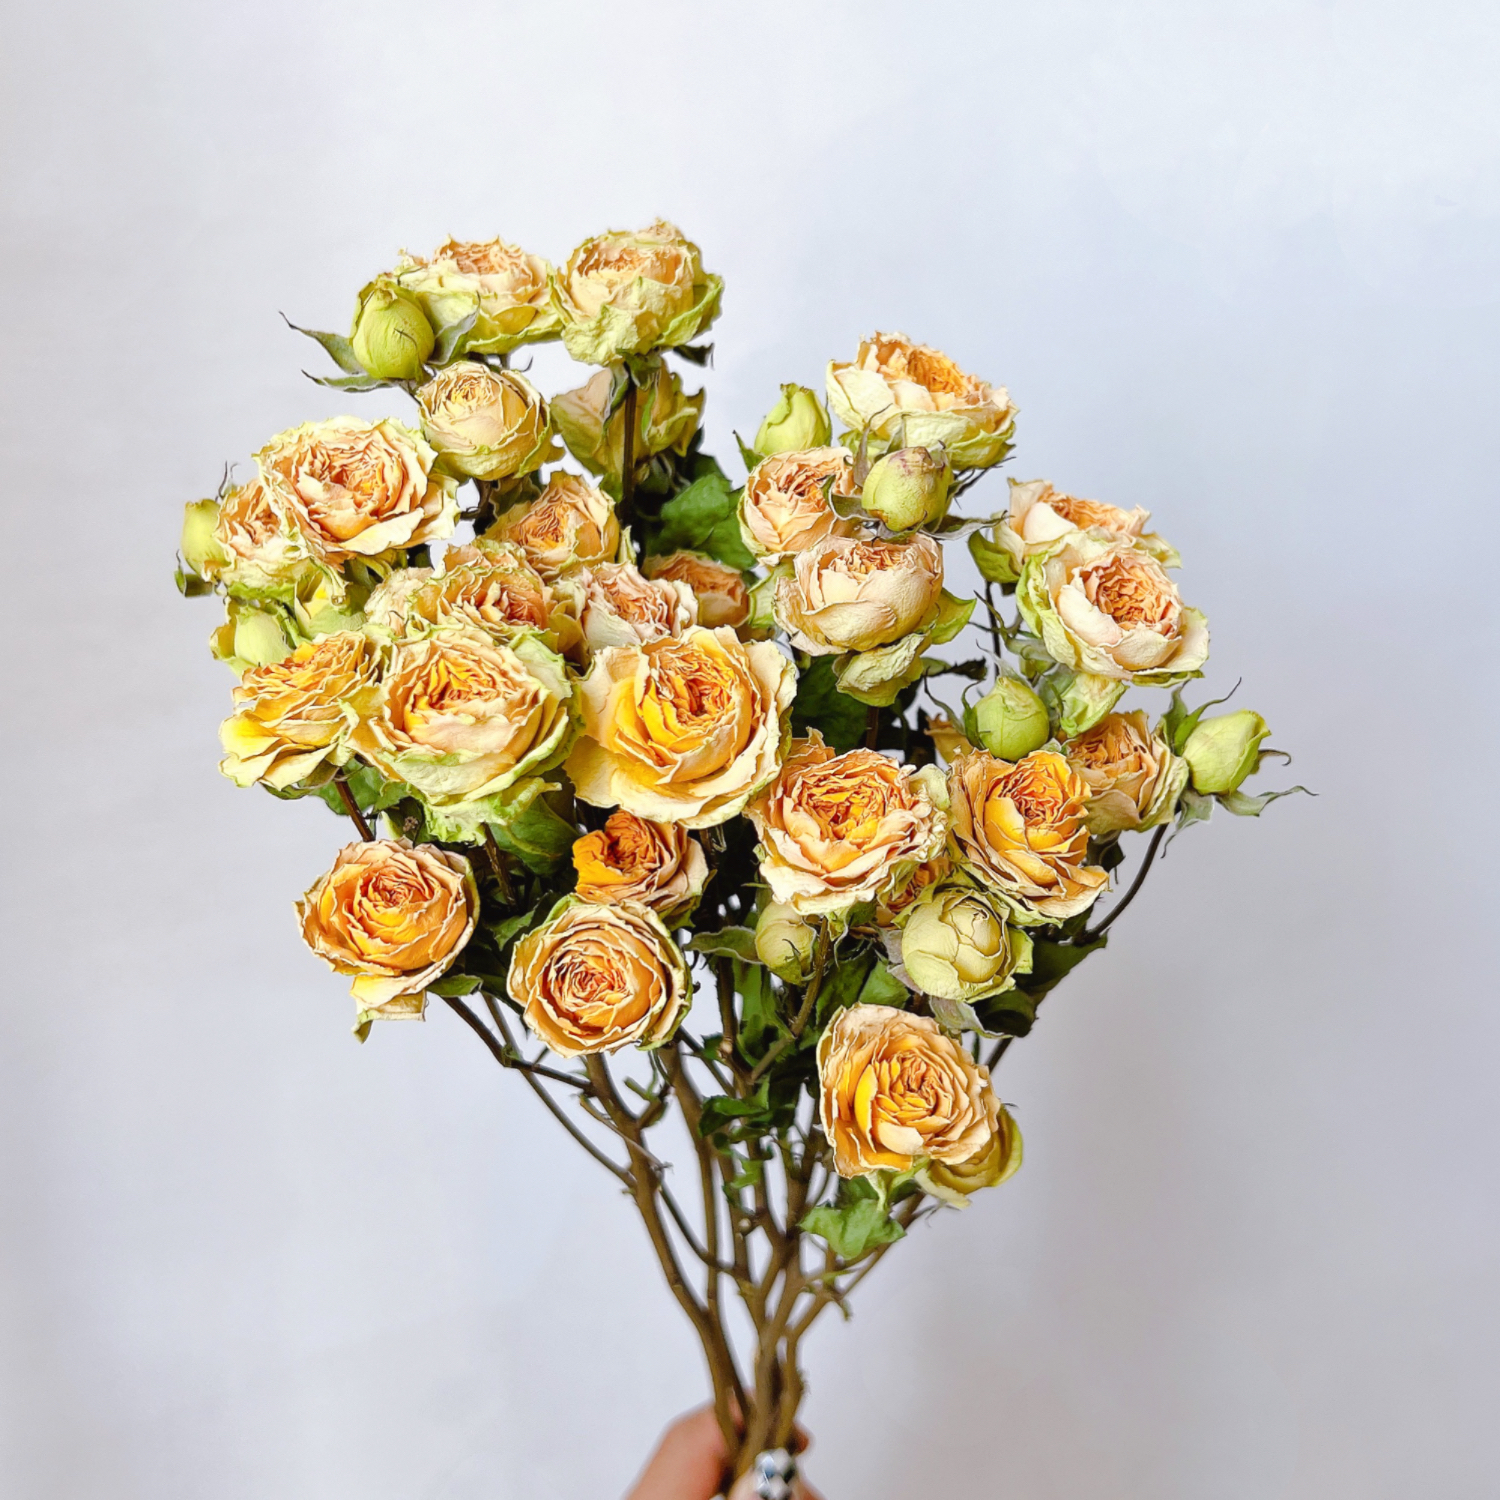 多头玫瑰干花花束蔷薇泡泡天然真花客厅家居插花装饰摆件送人礼物